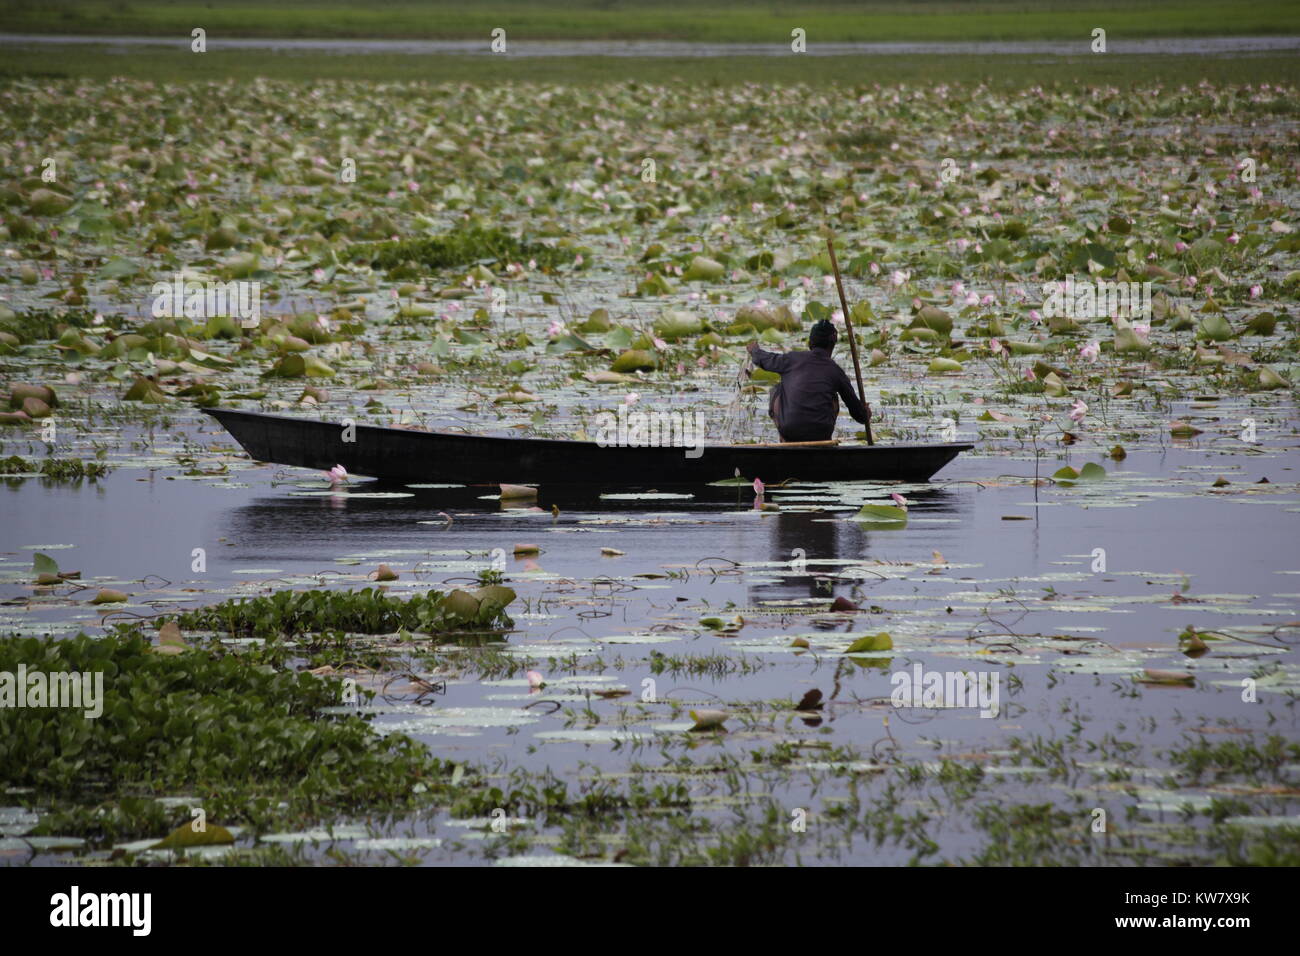 Pêcheur sur un bateau, Bangladesh Banque D'Images